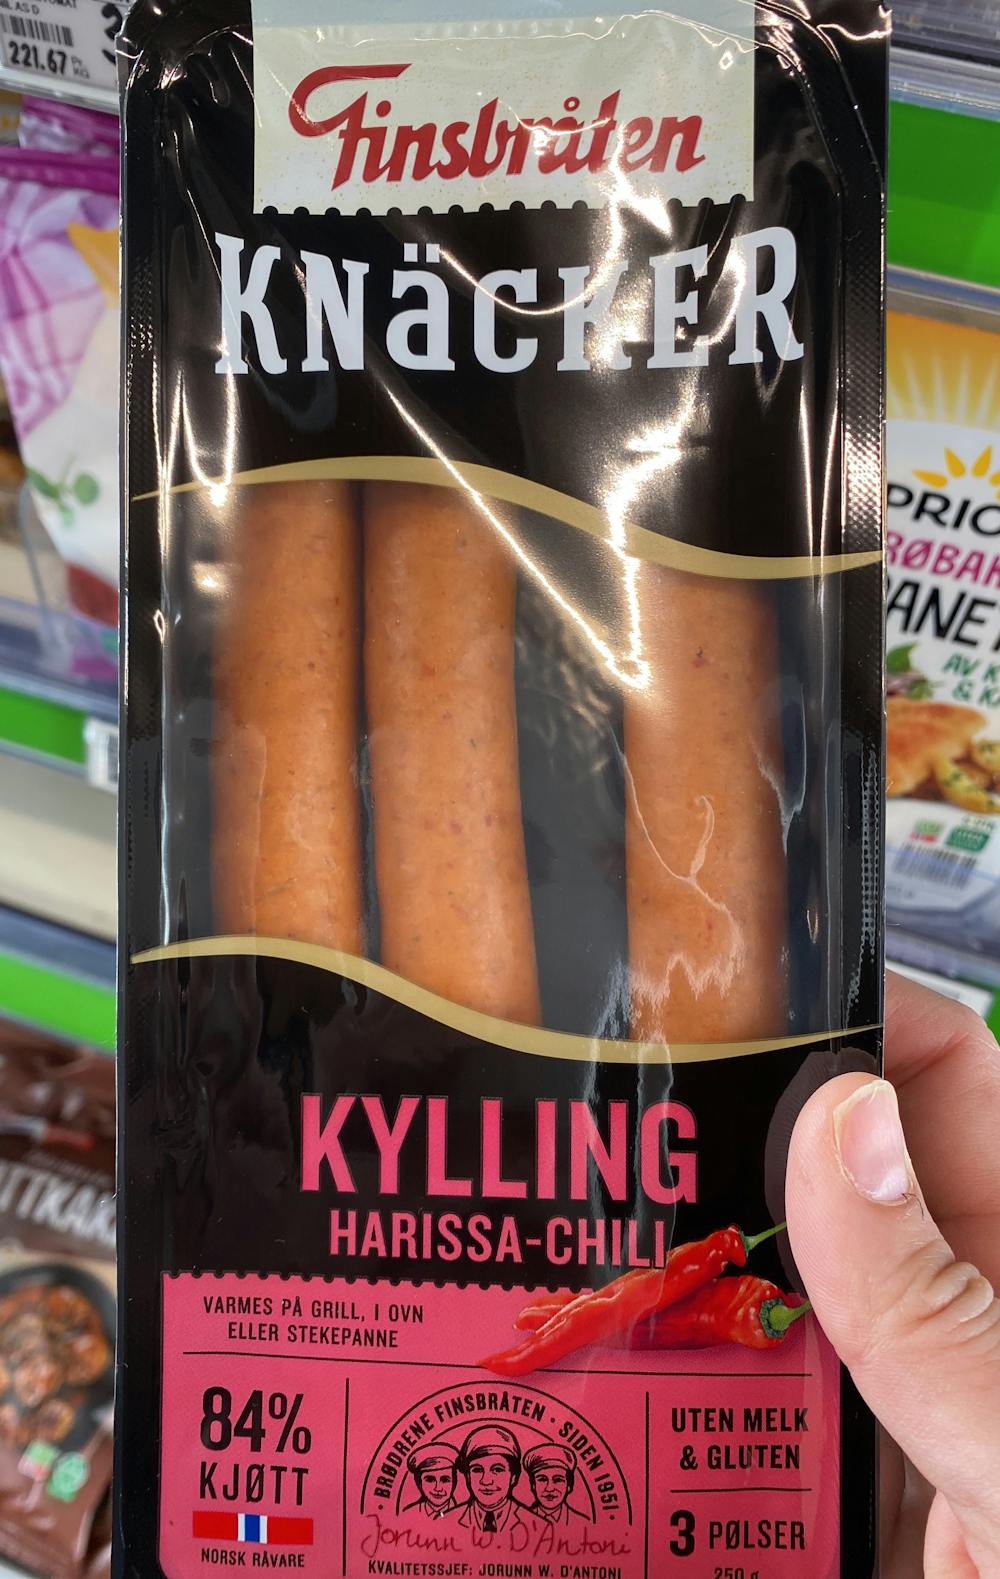 Knäcker kylling harissa-chili, Finsbråten